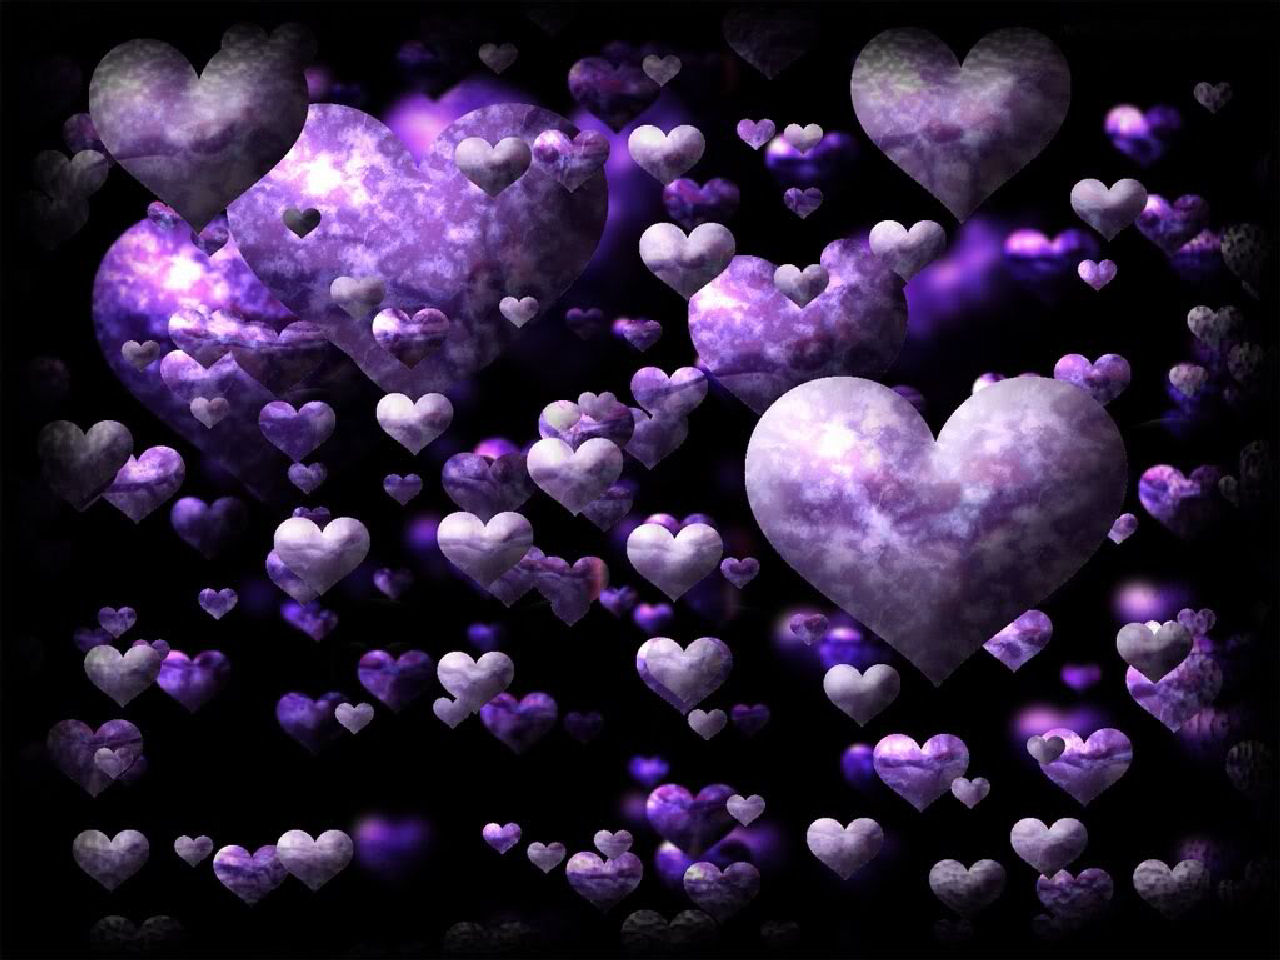  49 Purple Heart Wallpaper Desktop on WallpaperSafari